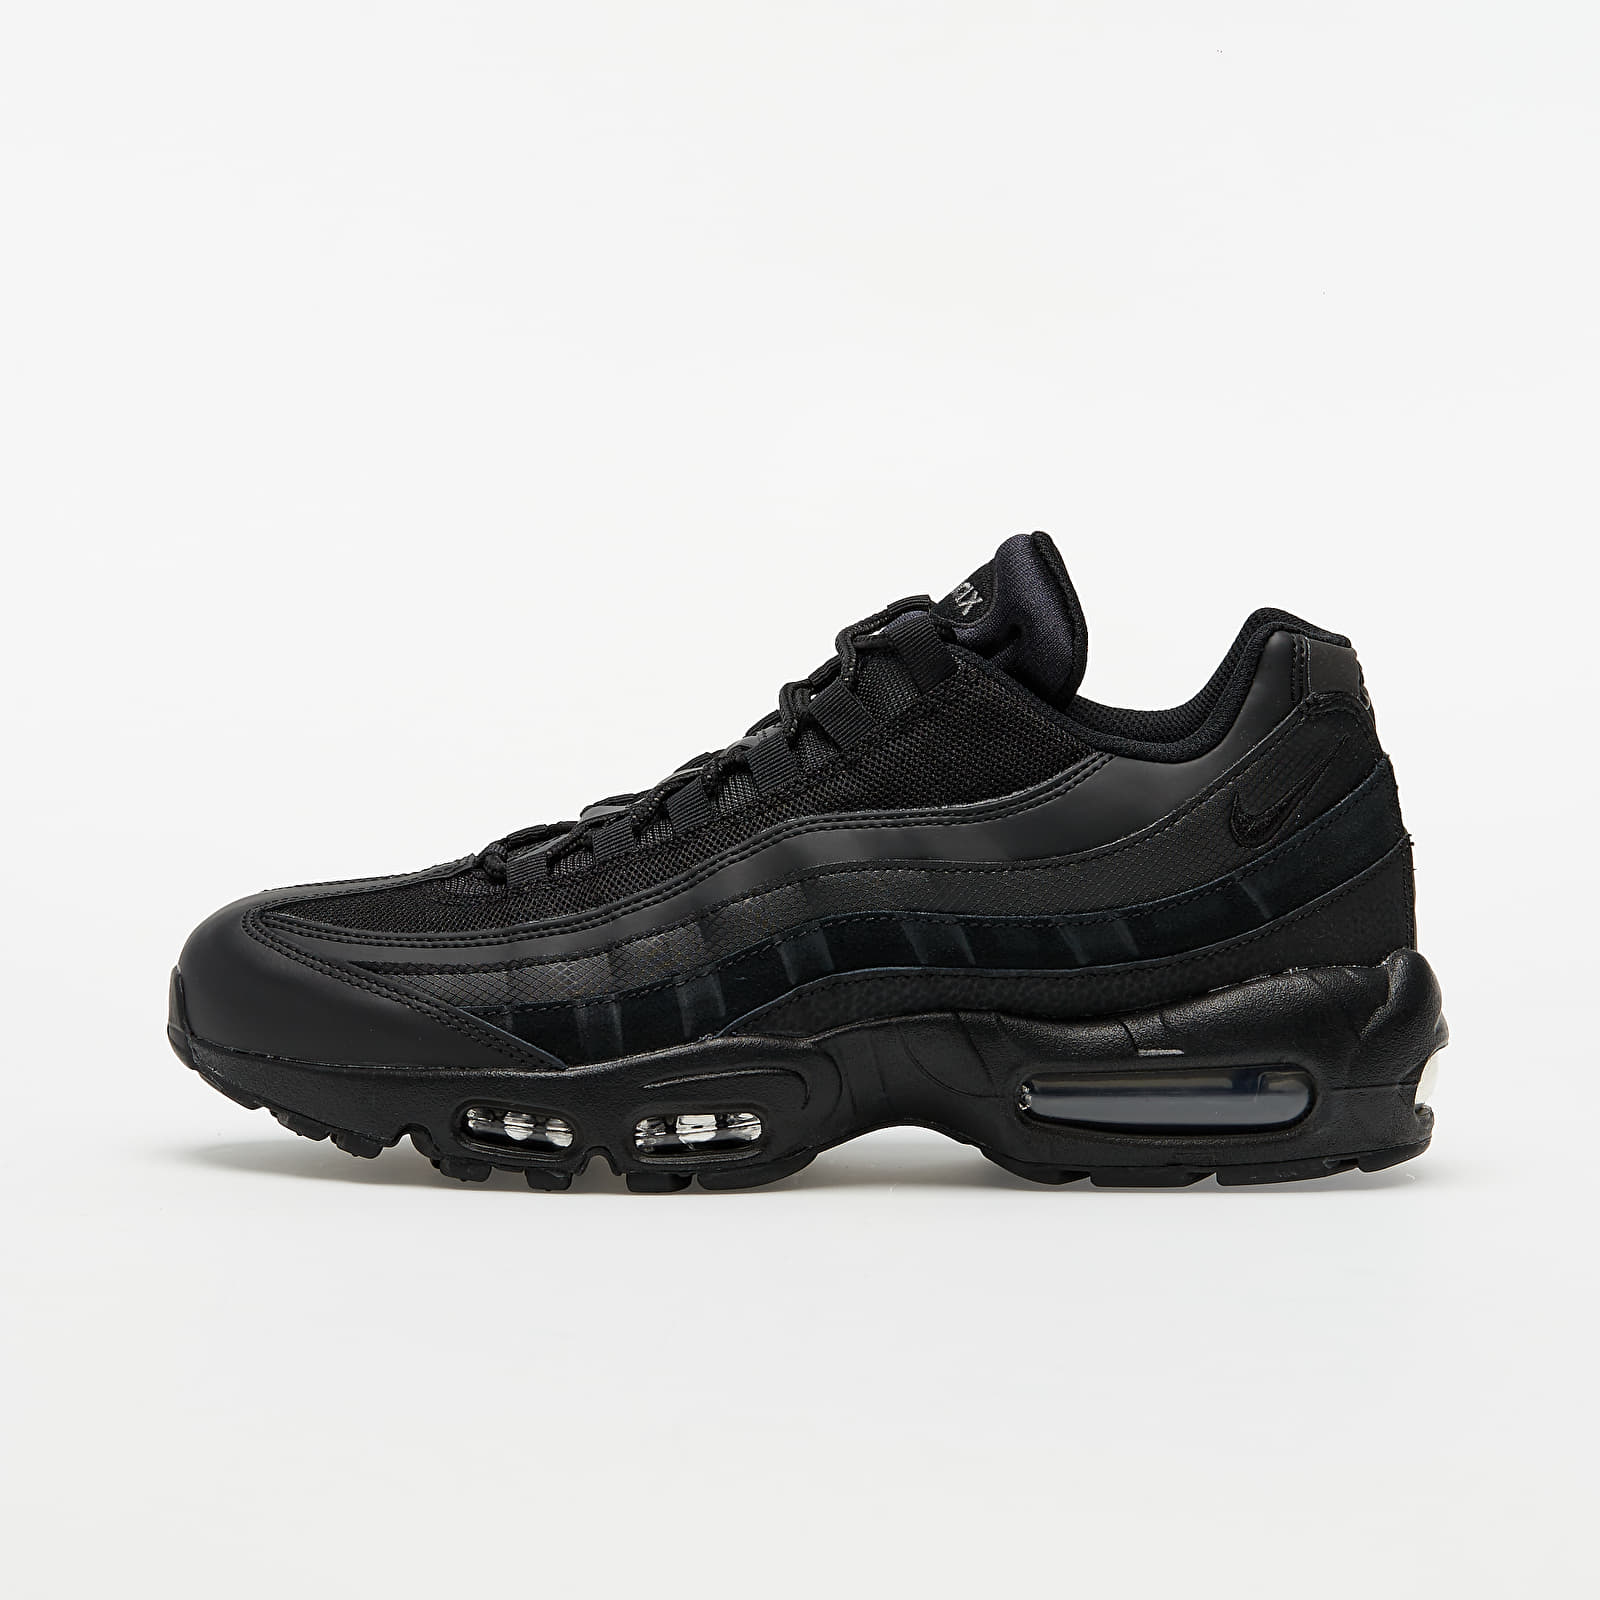 Încălțăminte și sneakerși pentru bărbați Nike Air Max 95 Essential Black/ Black-Dark Grey